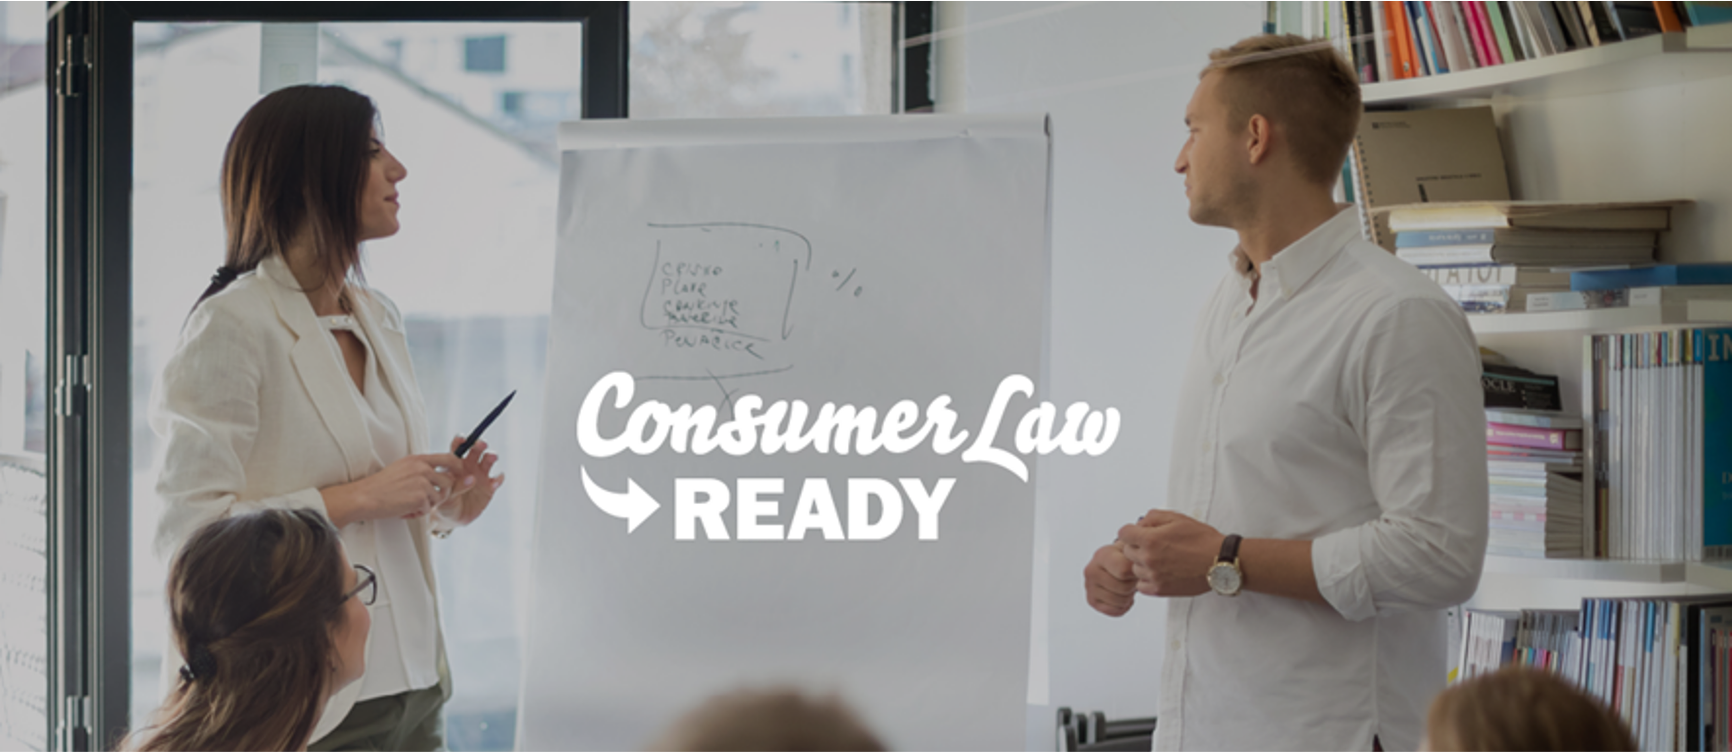 Consumer Law Ready-Mais uma viagem concluída com sucesso